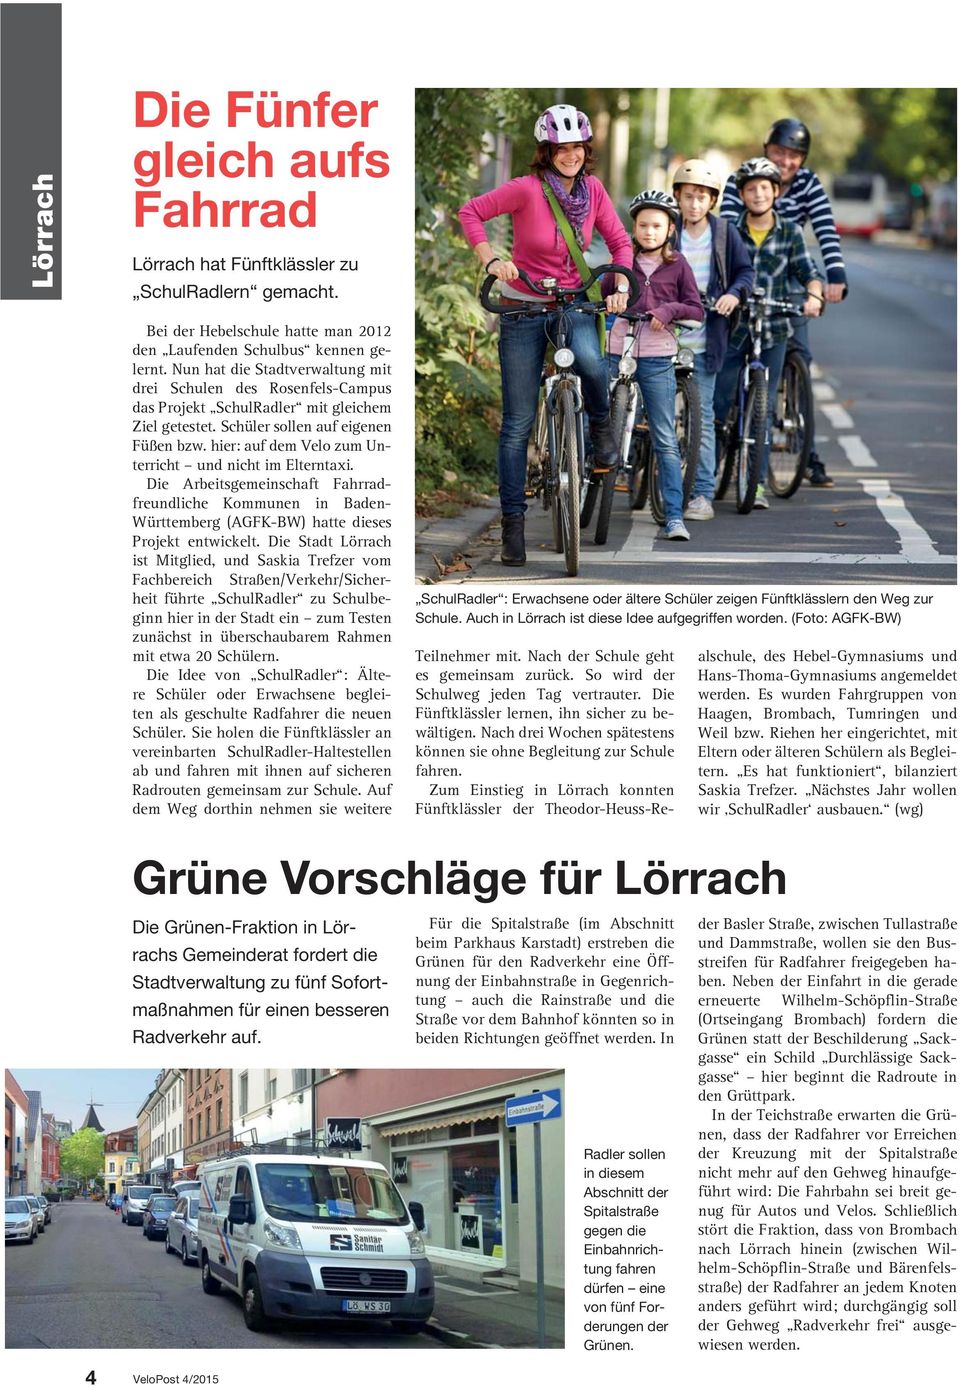 hier: auf dem Velo zum Unterricht und nicht im Elterntaxi. Die Arbeitsgemeinschaft Fahrradfreundliche Kommunen in Baden- Württemberg (AGFK-BW) hatte dieses Projekt entwickelt.